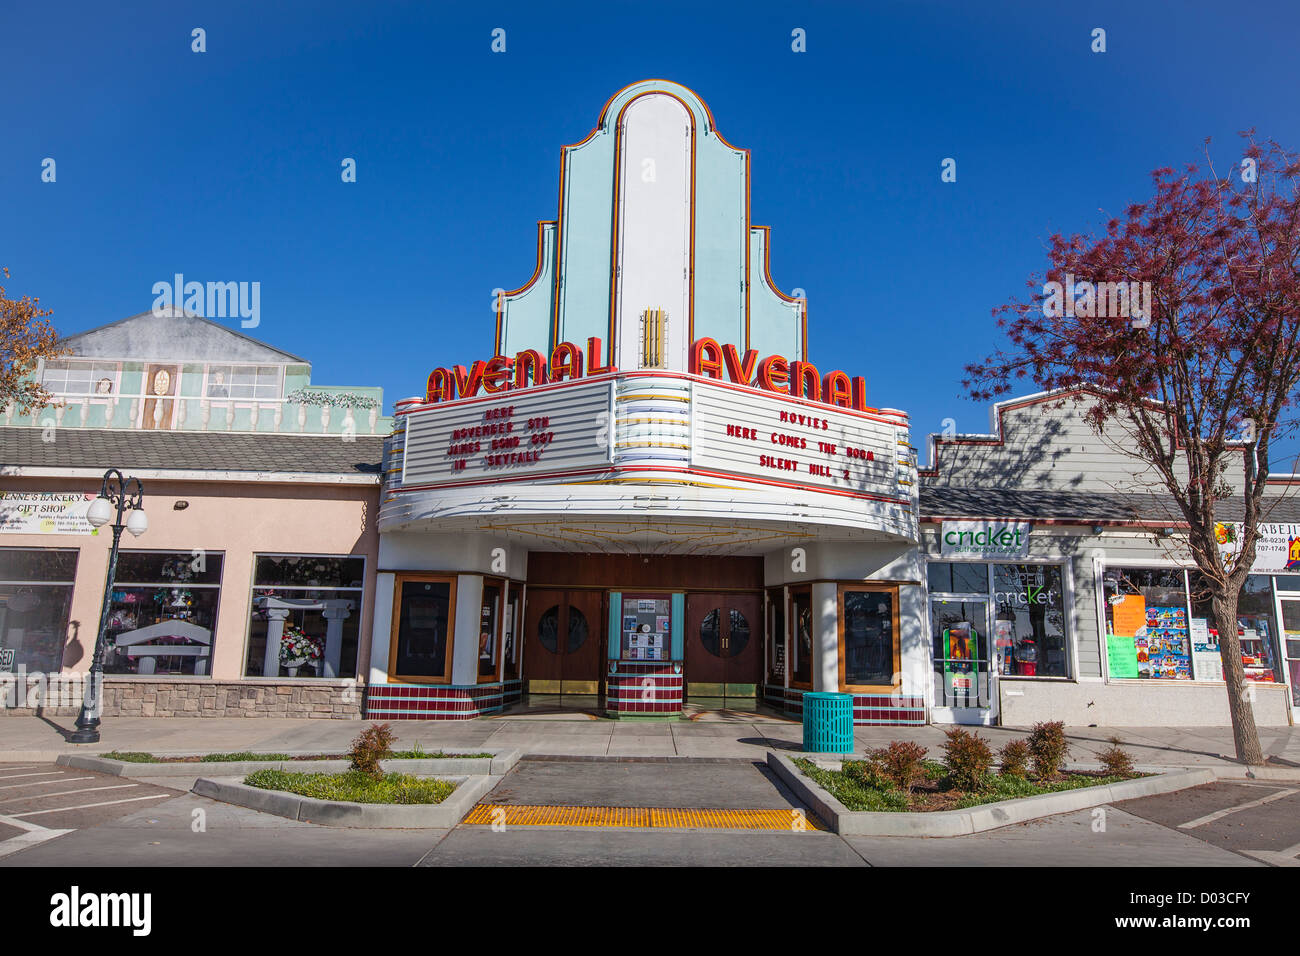 L'art déco en cinéma Avenal, Californie, un extérieur bien préservés et de cadrage. Banque D'Images